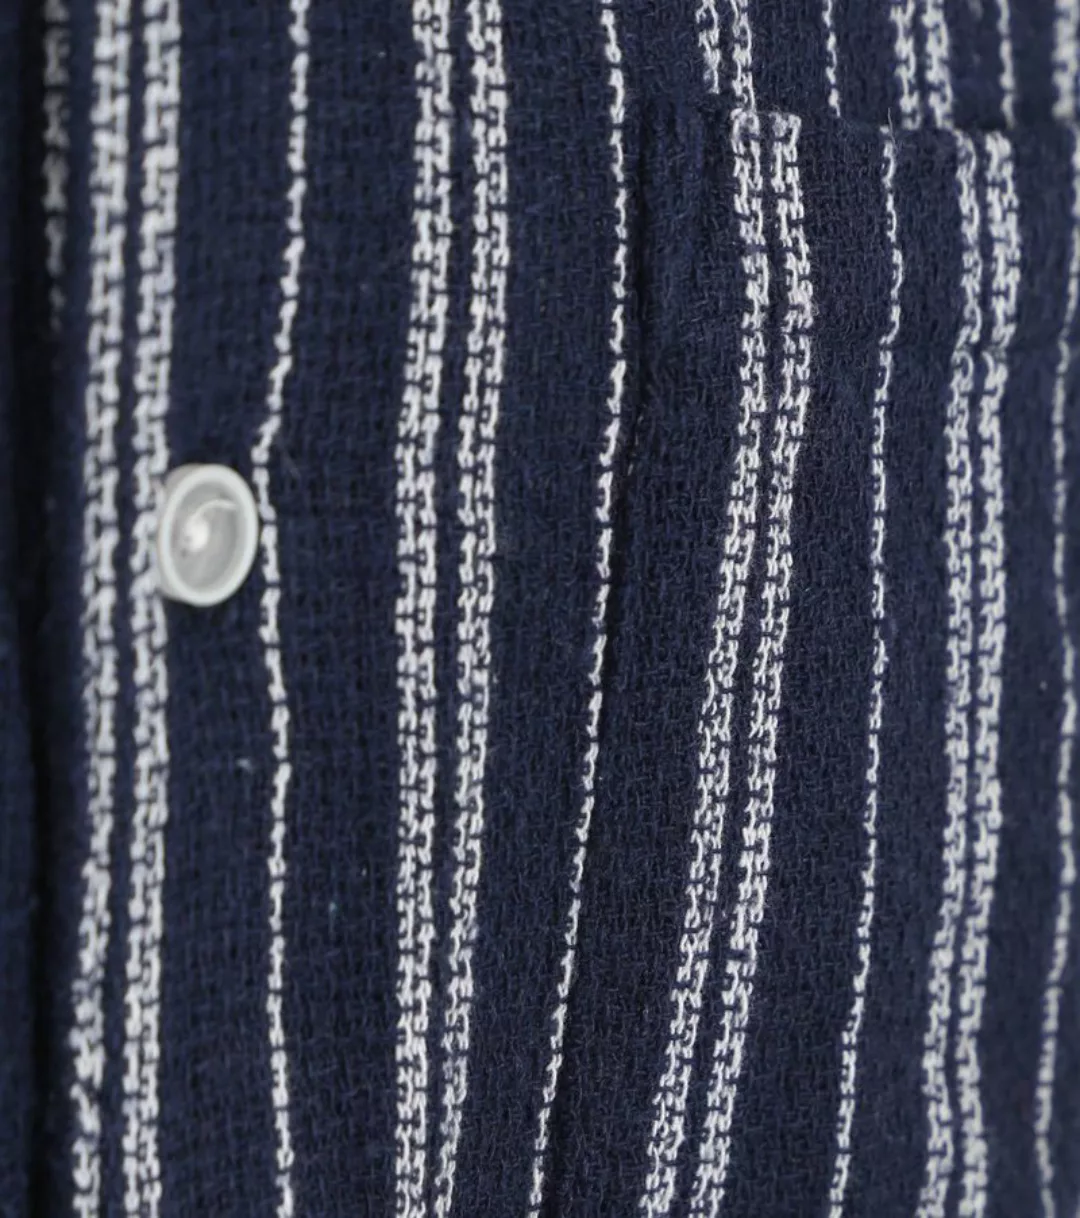 Anerkjendt Short Sleeve Hemd Leo Dobby Navy - Größe S günstig online kaufen